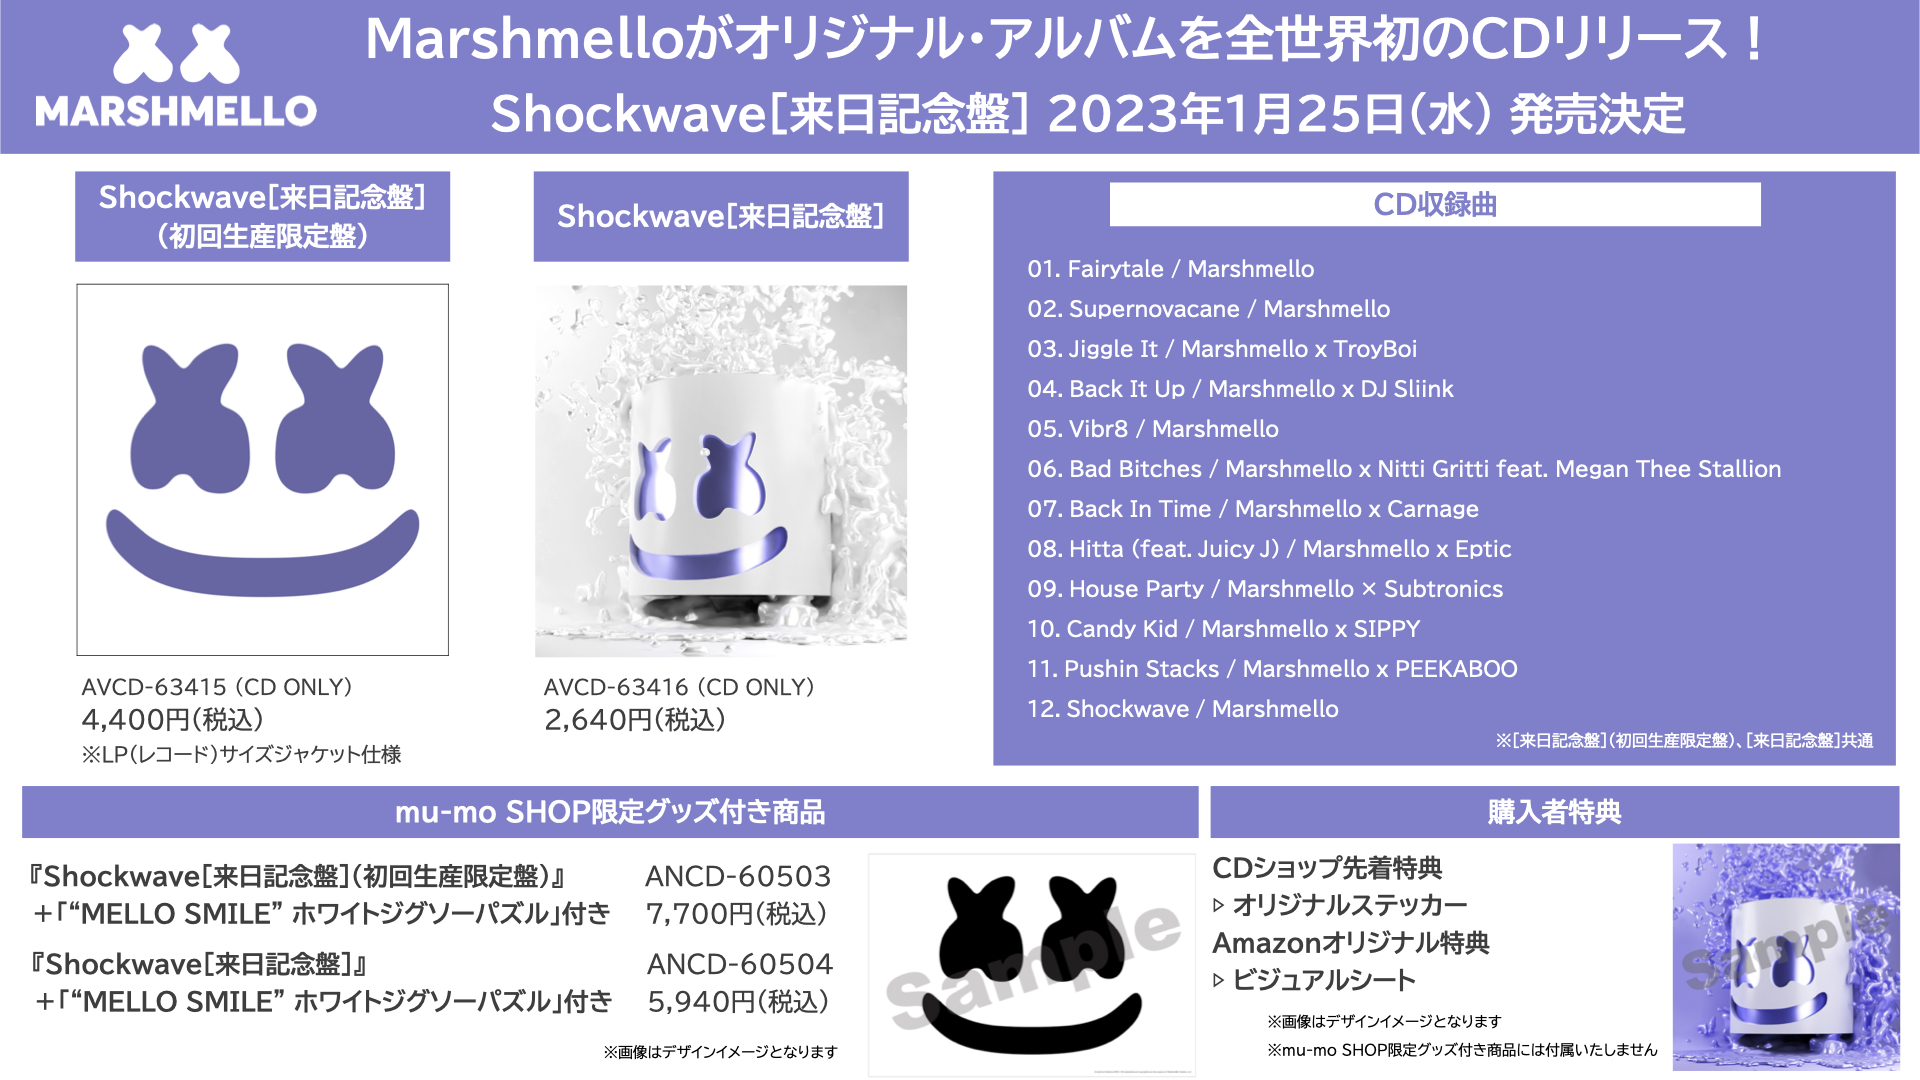 Marshmello Japan／マシュメロ (@Marshmello_JPN) / Twitter